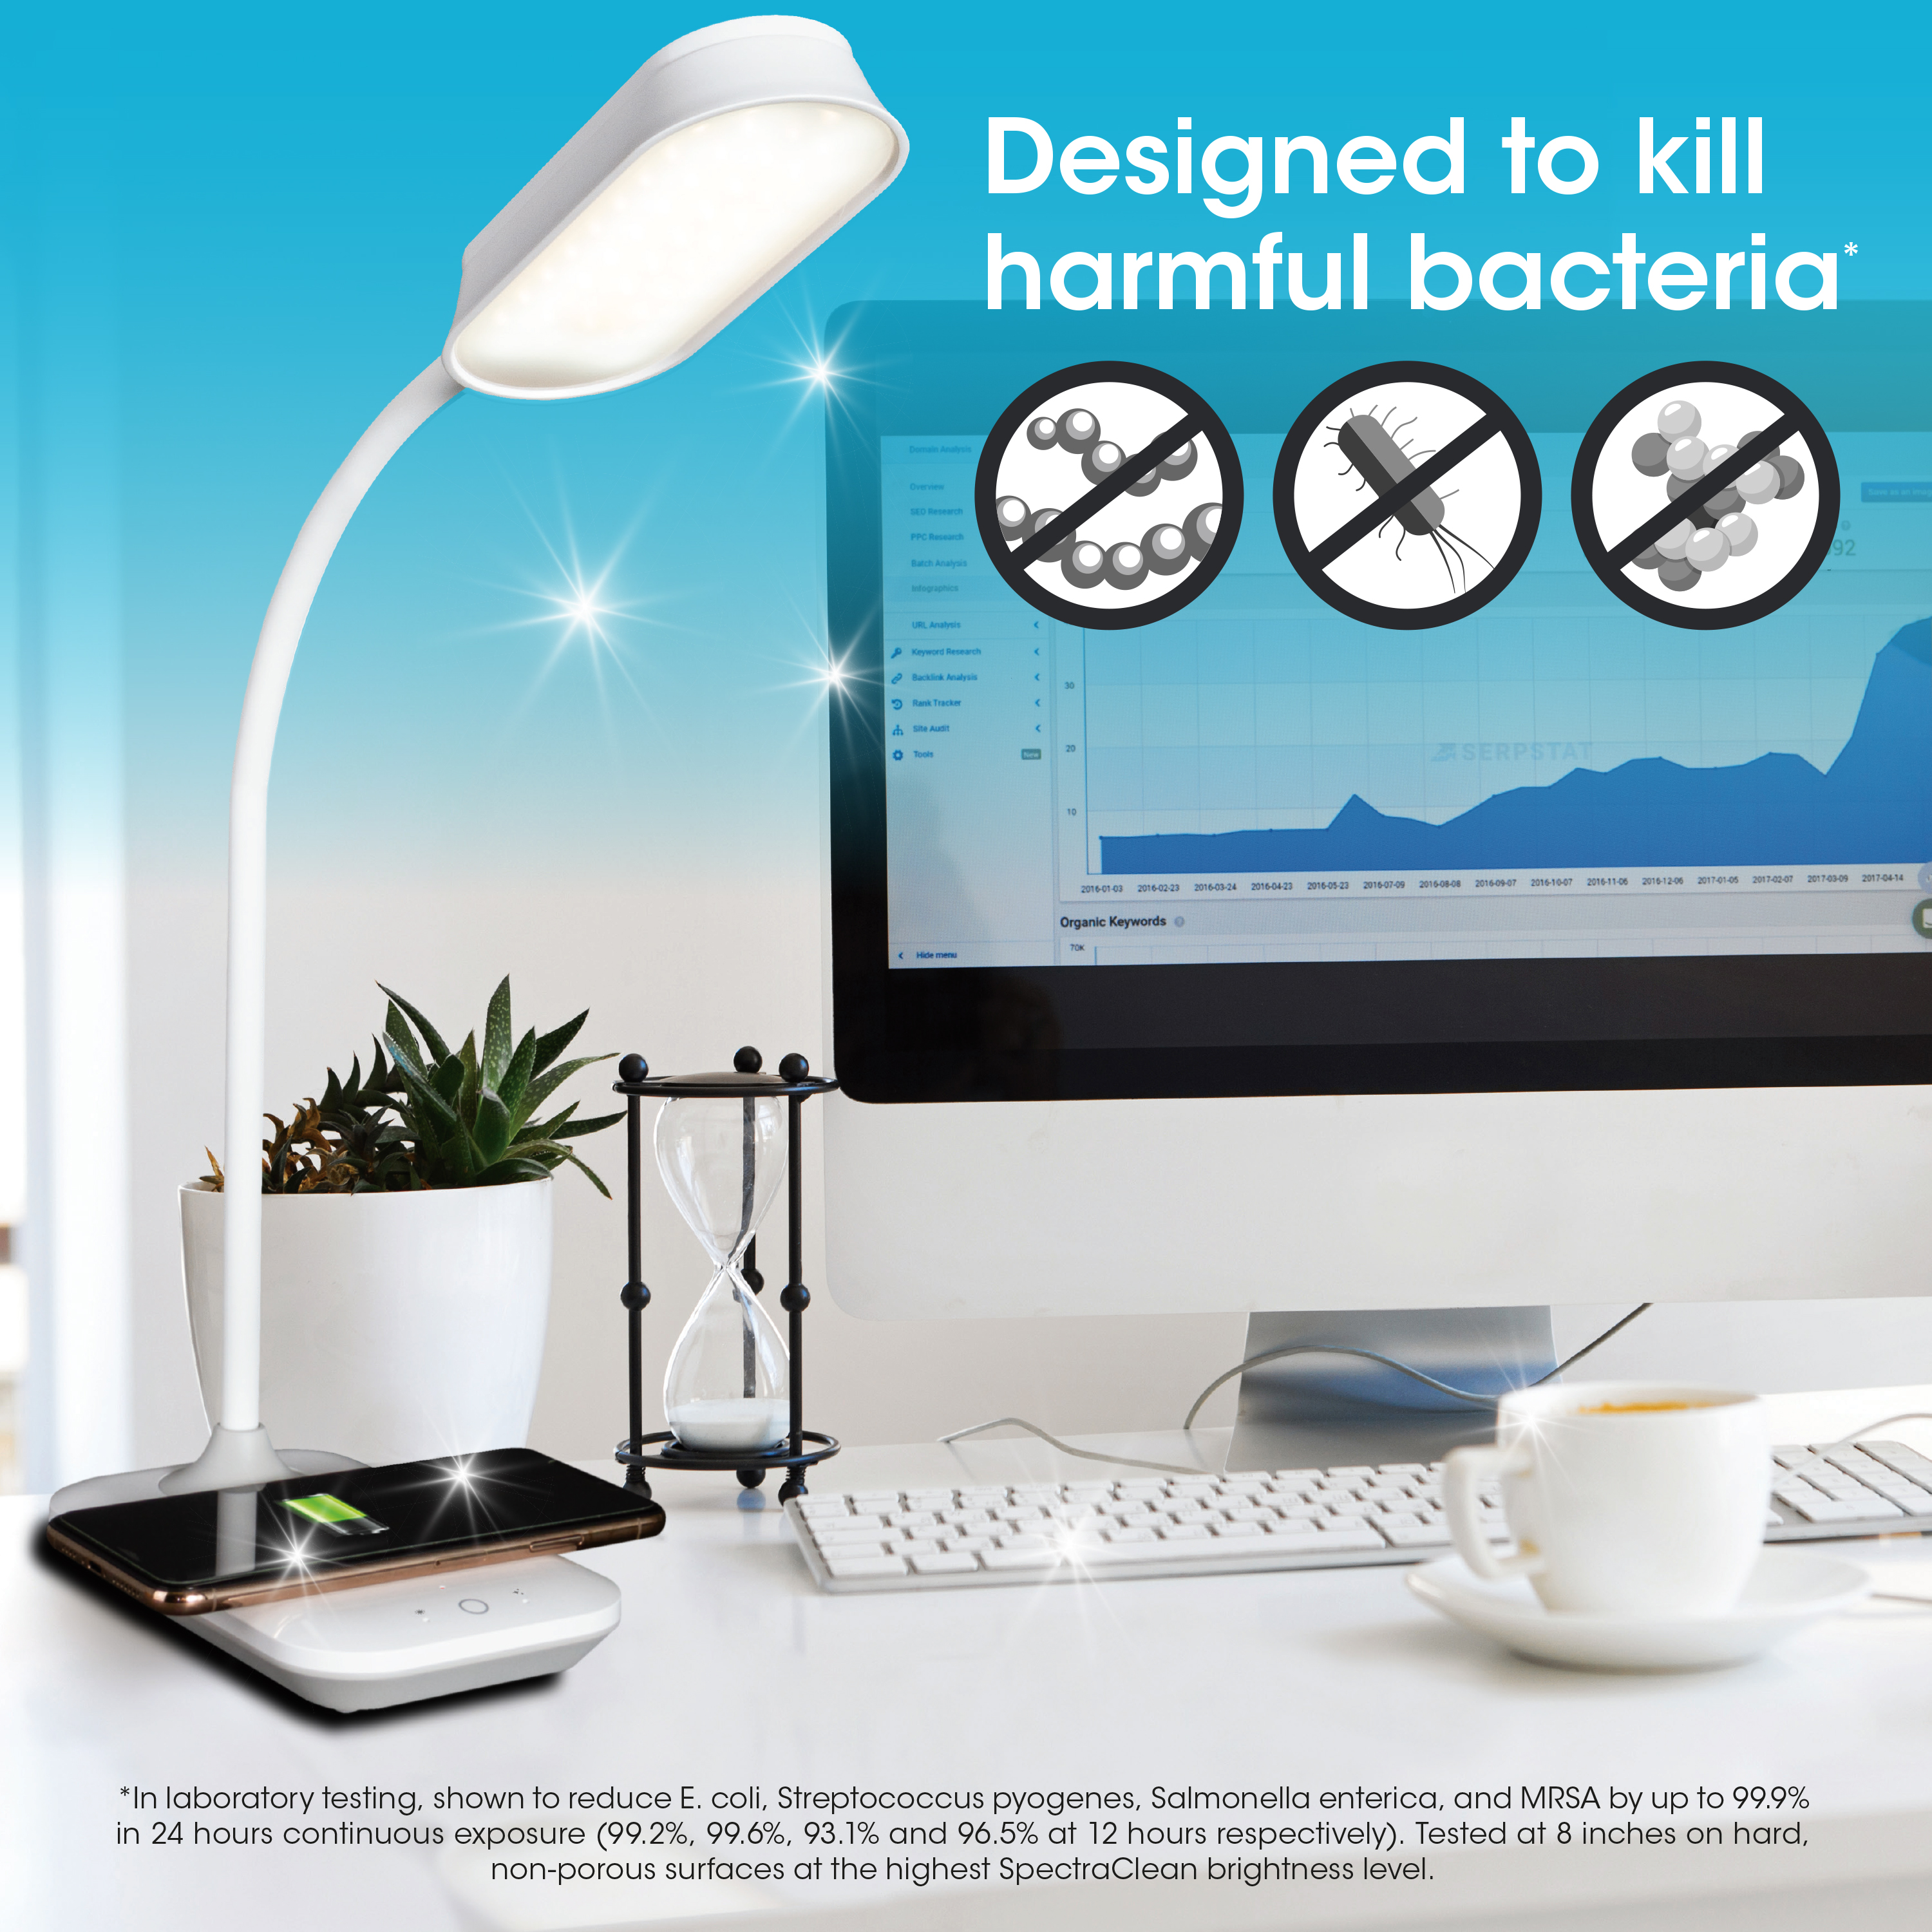 OttLite Achieve LED Sanitizing Desk Lamp with Wireless Charging, White,  Modern Light for Reading, Crafting  Office Desktop